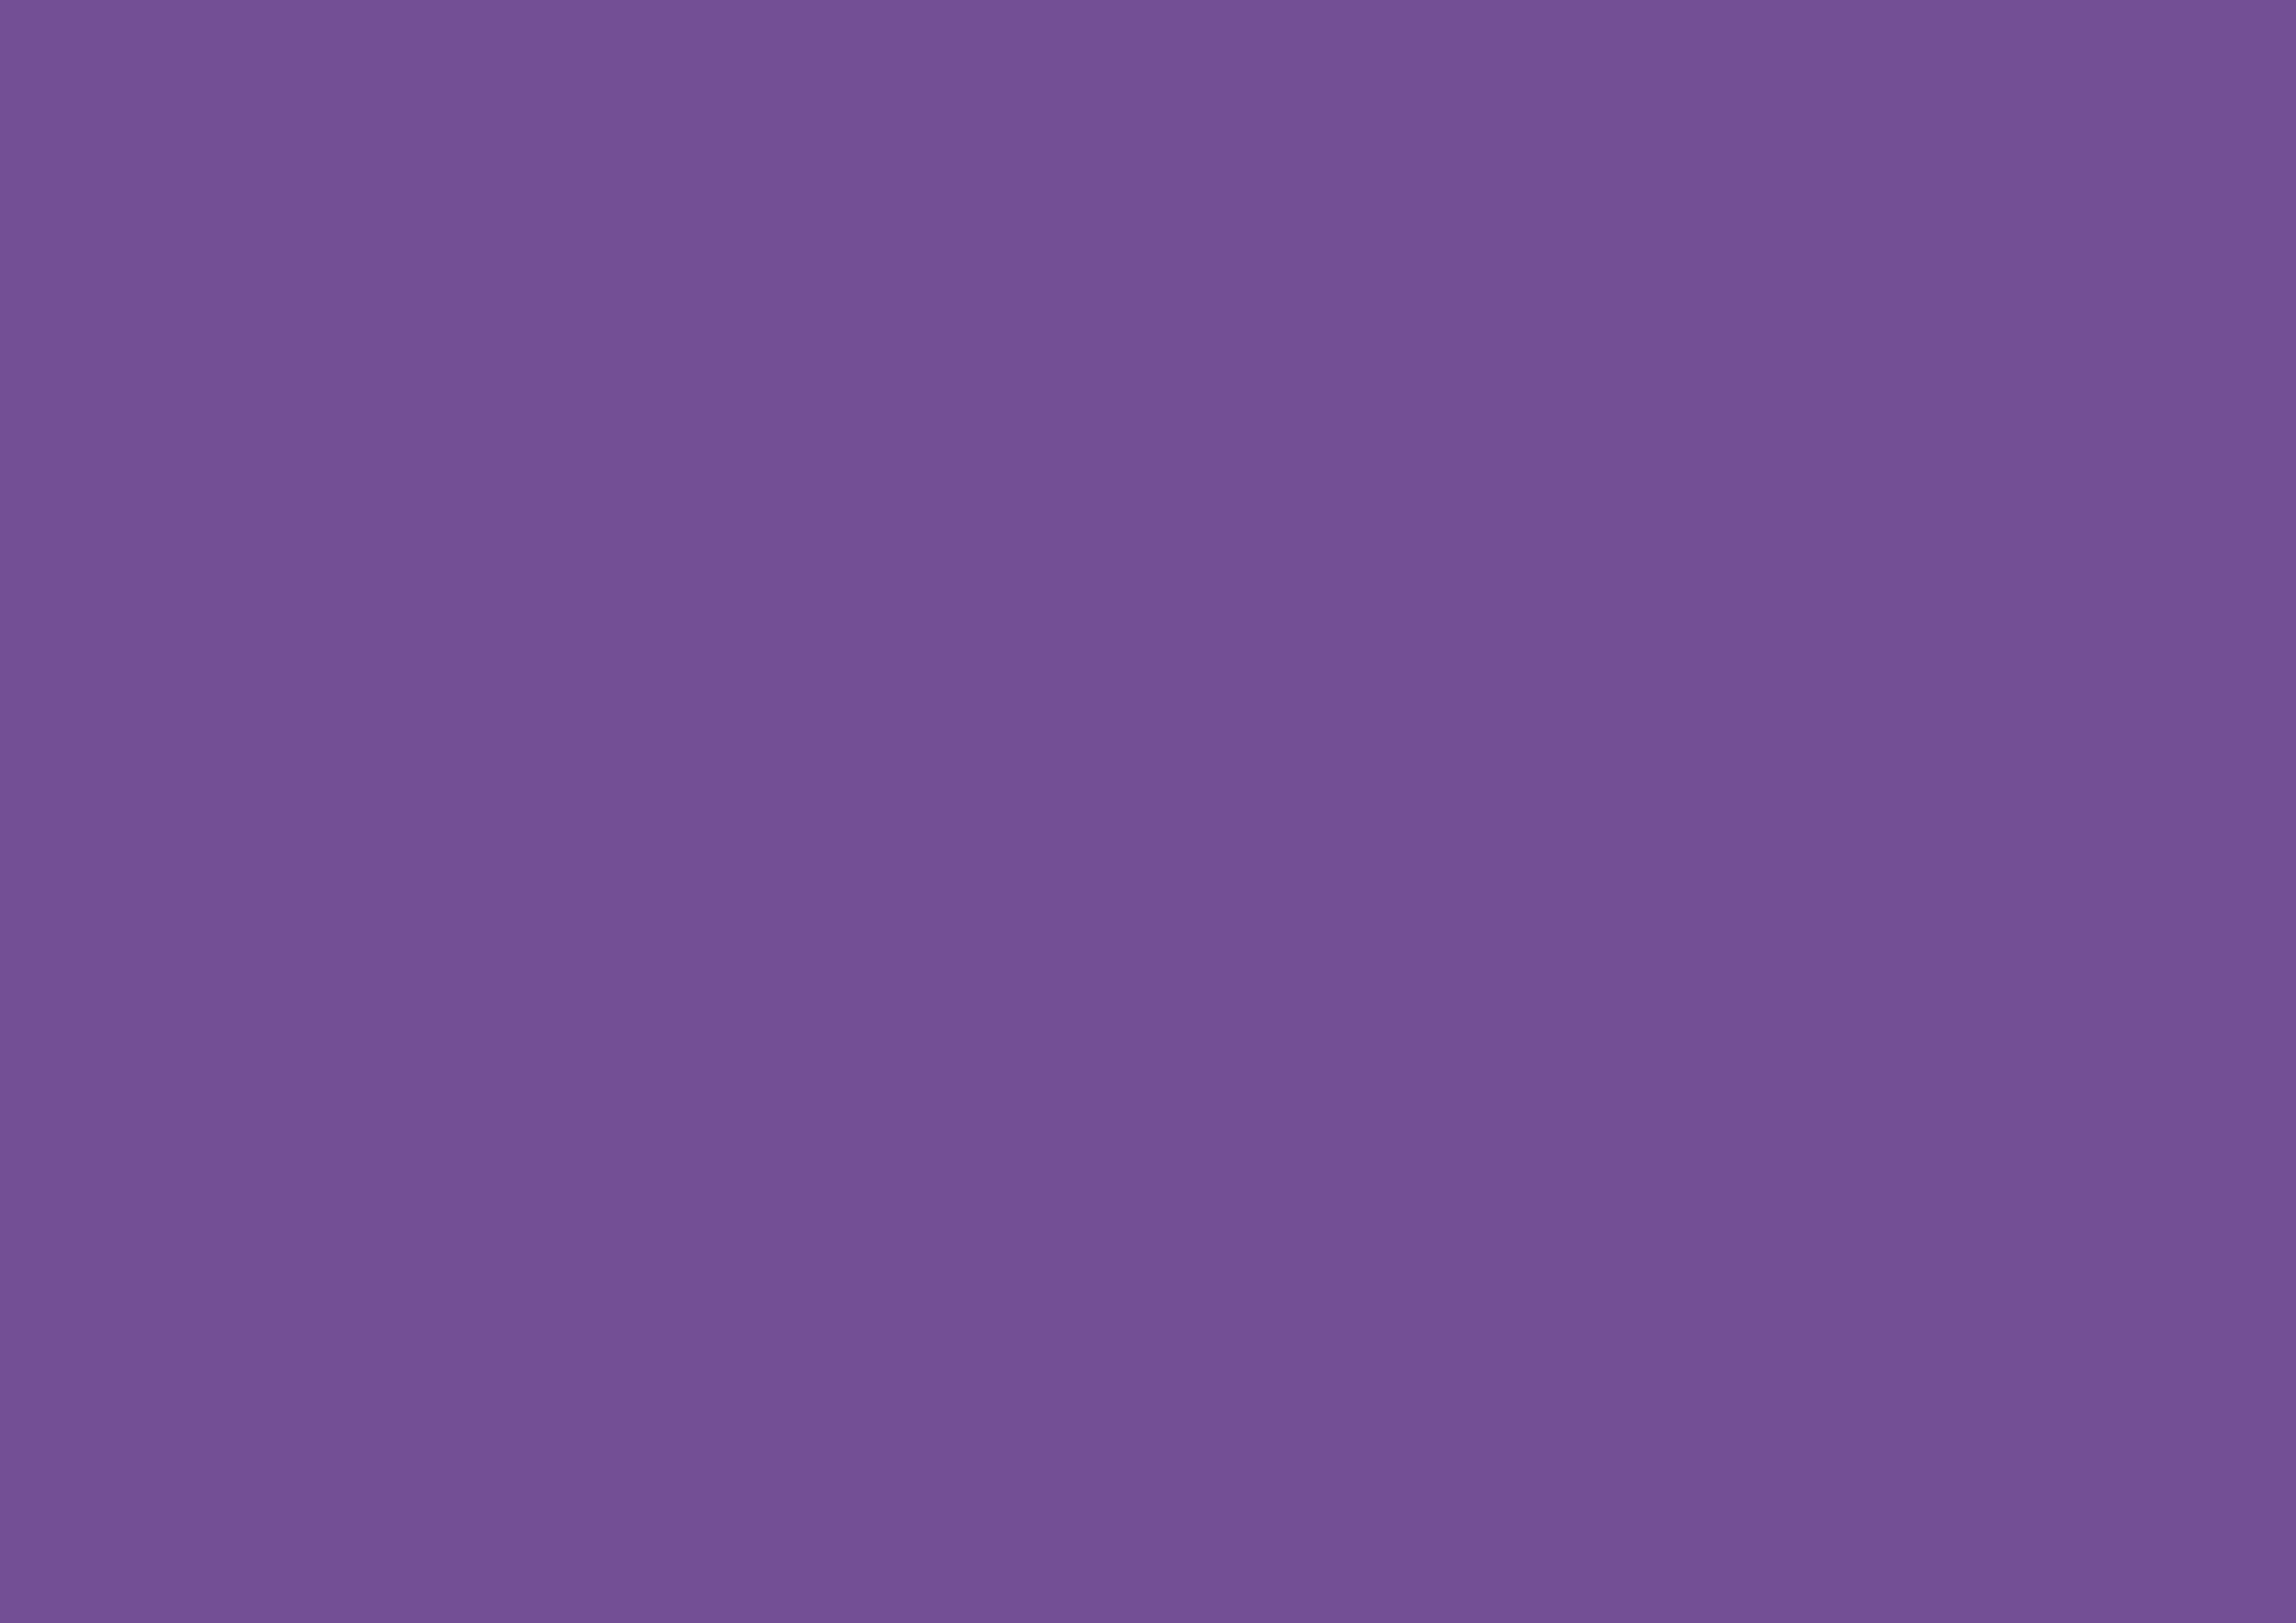 3508x2480 Dark Lavender Solid Color Background